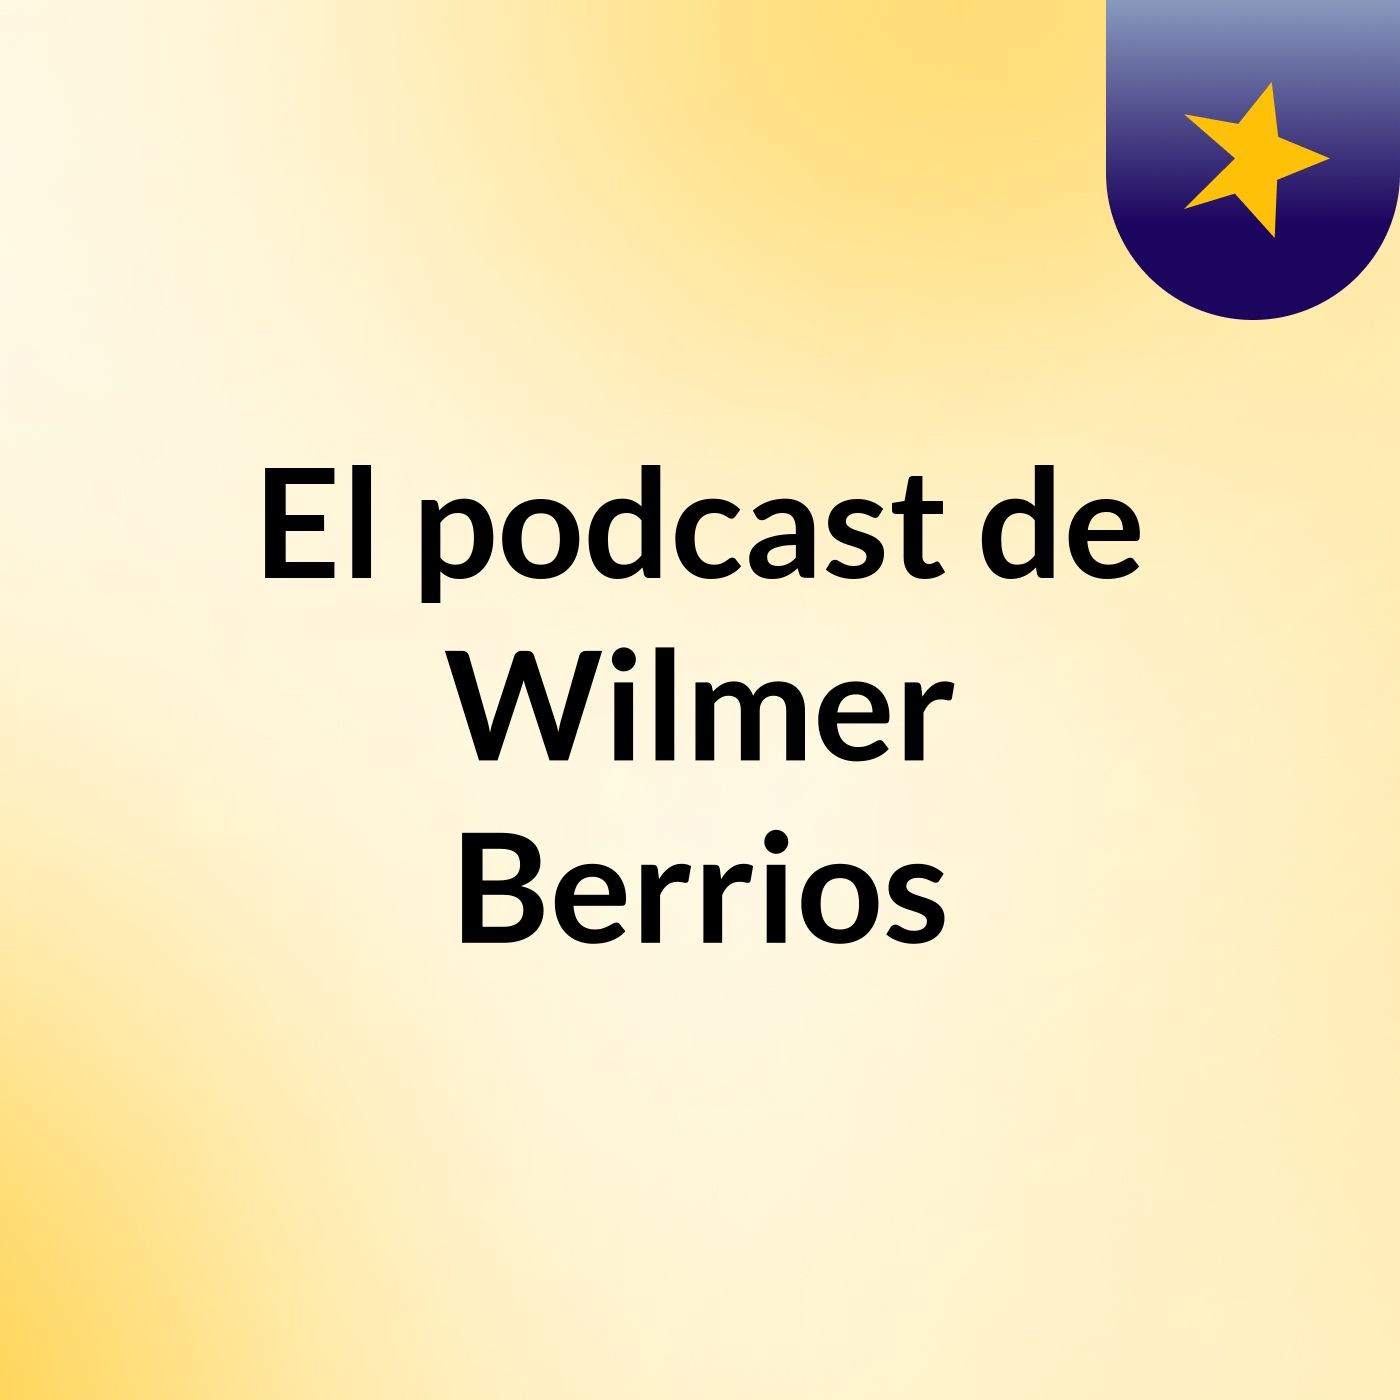 Episodio 6 - El podcast de Wilmer Berrios